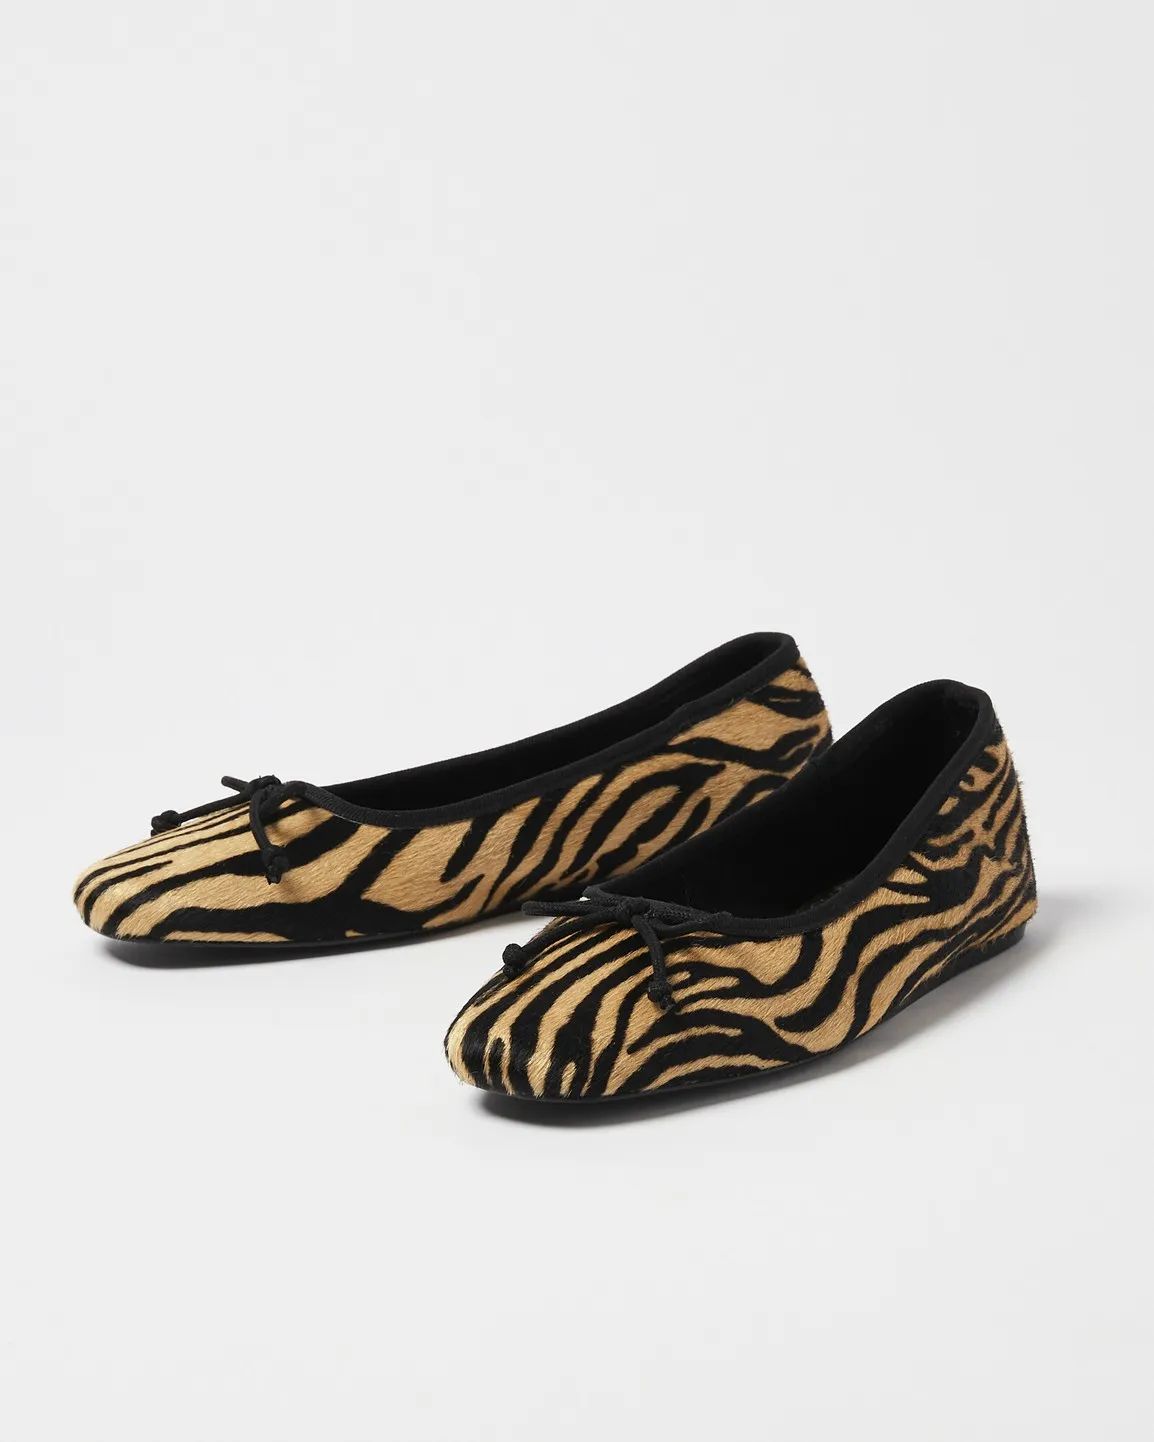 Animal Tiger Print Ballet Shoes | Oliver Bonas | Oliver Bonas (Global)